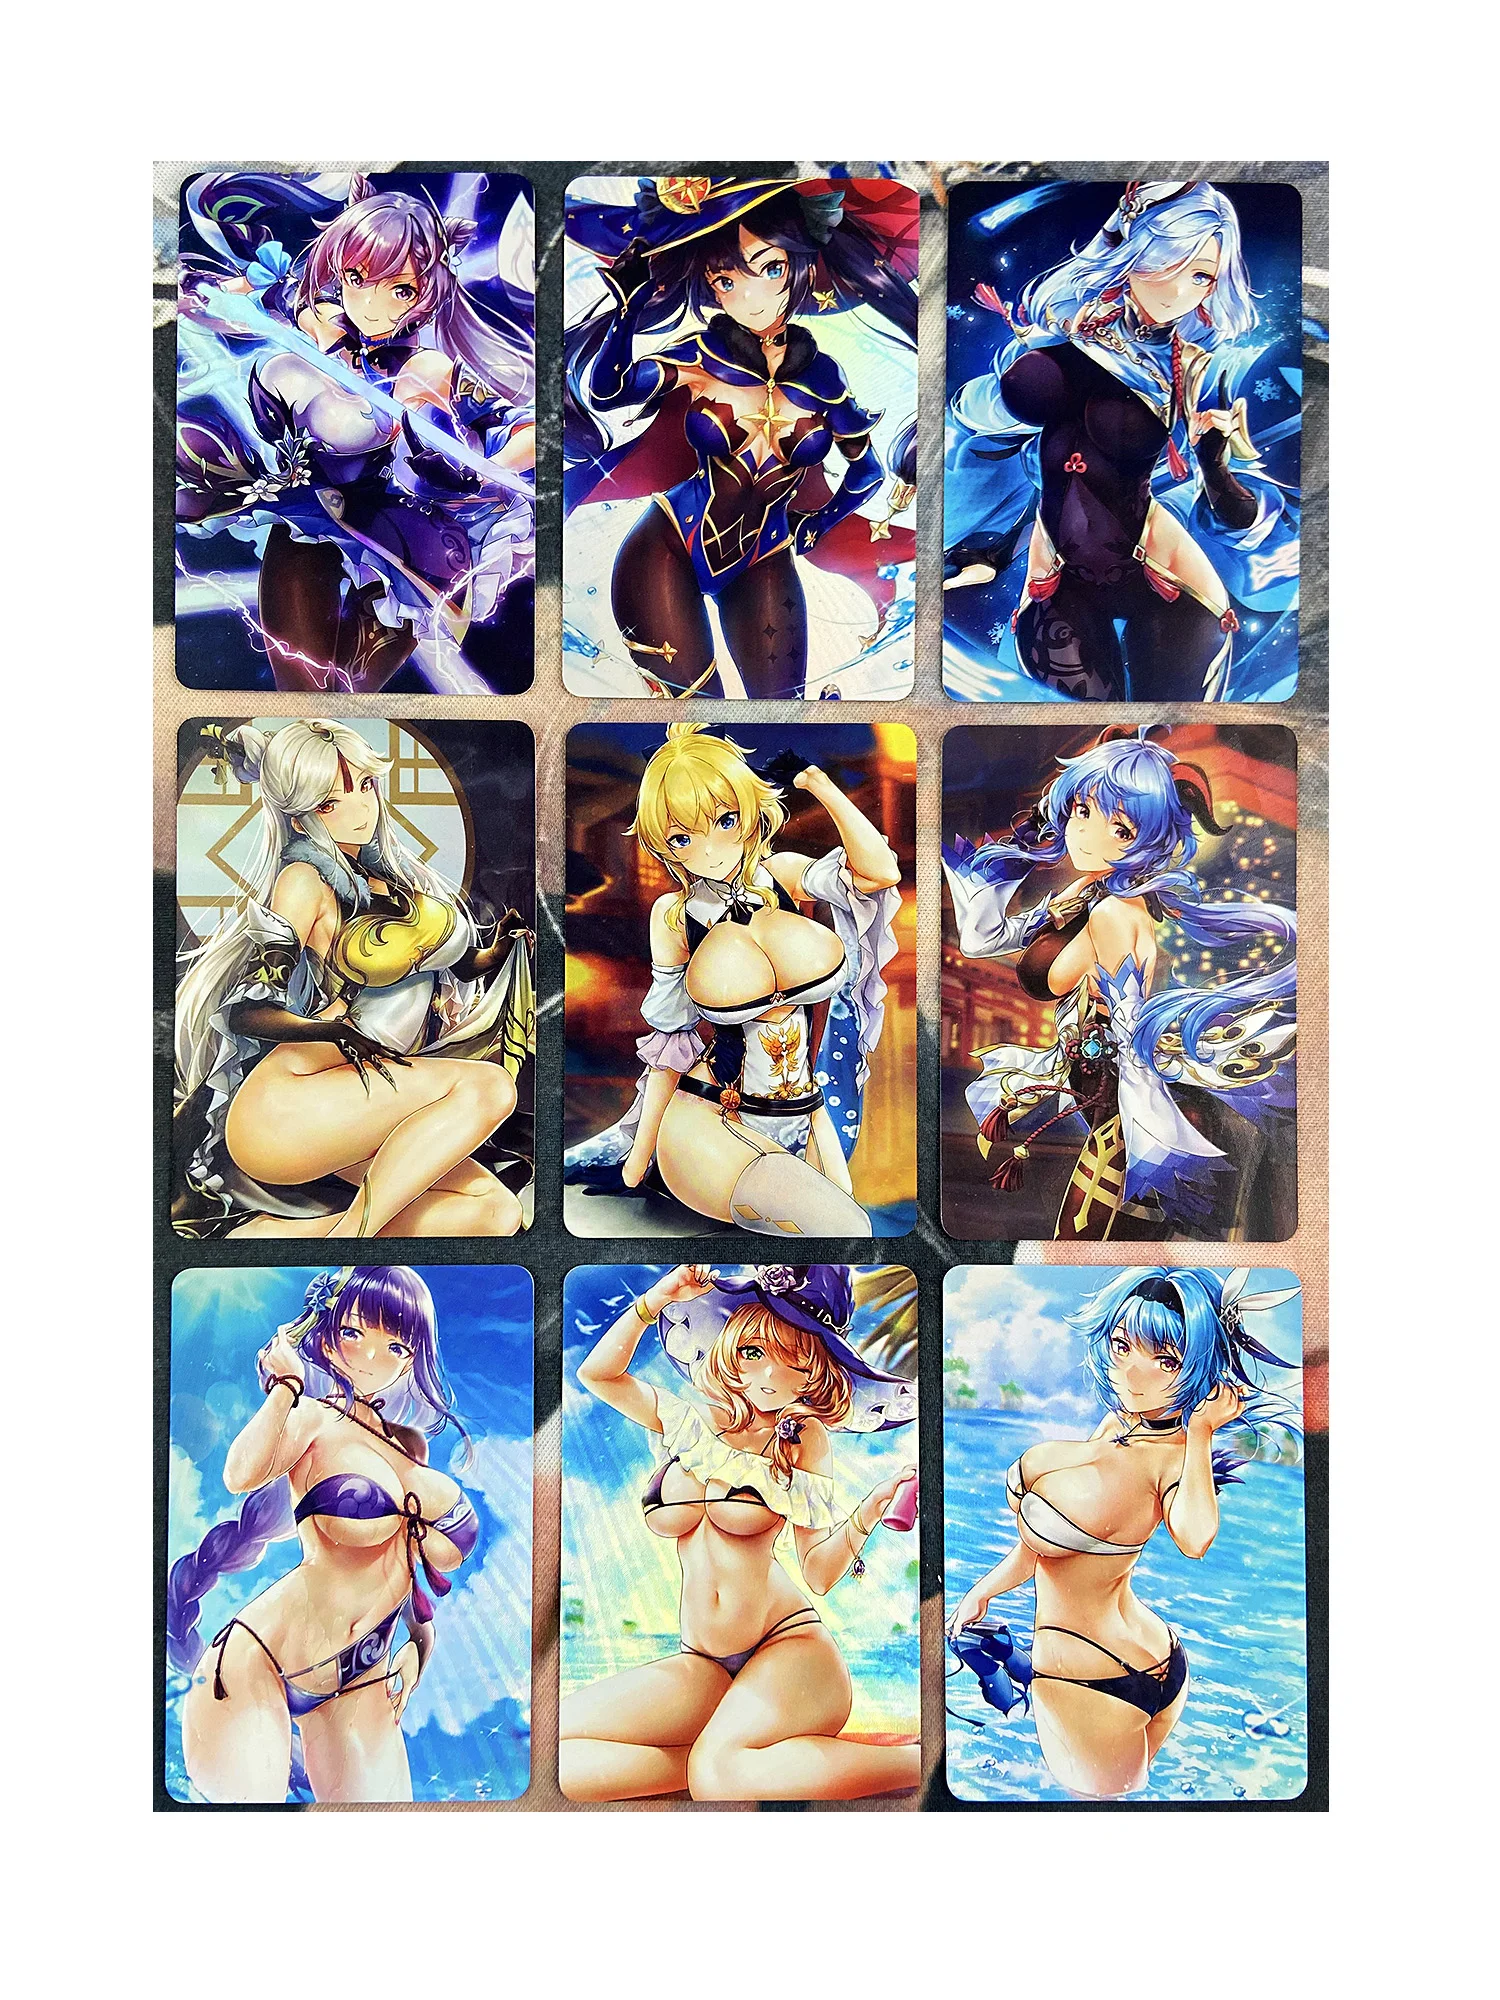 

9pcs/set Sexy Genshin ACG Beelzebul Raiden Shogun No.1 Refraction Sexy Girls Hobby Collectibles Anime Game Collection Cards